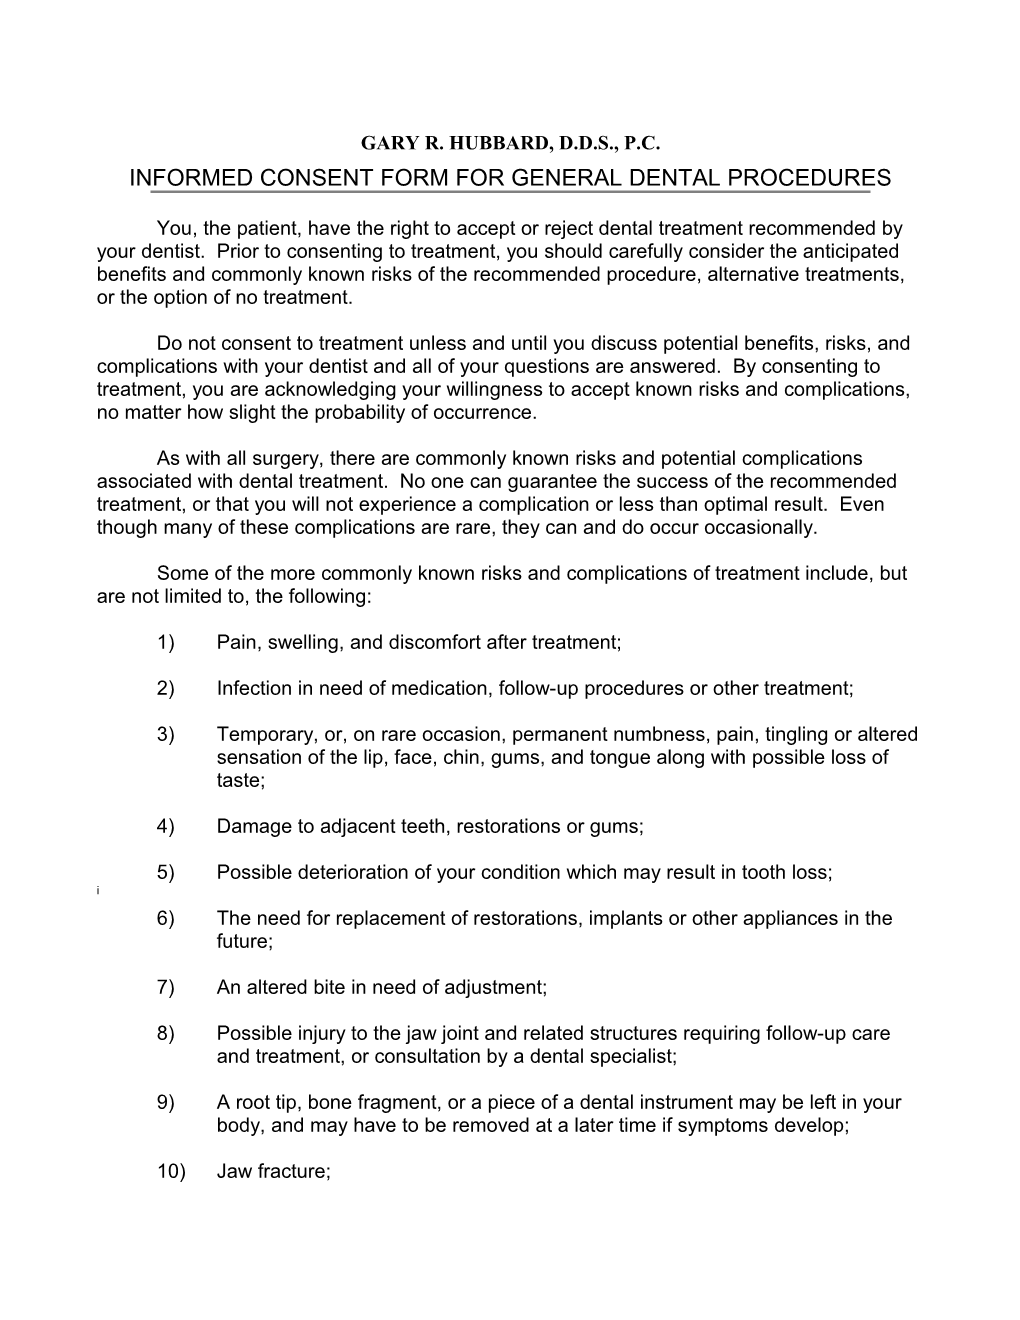 Informed Consent Form for General Dental Procedures